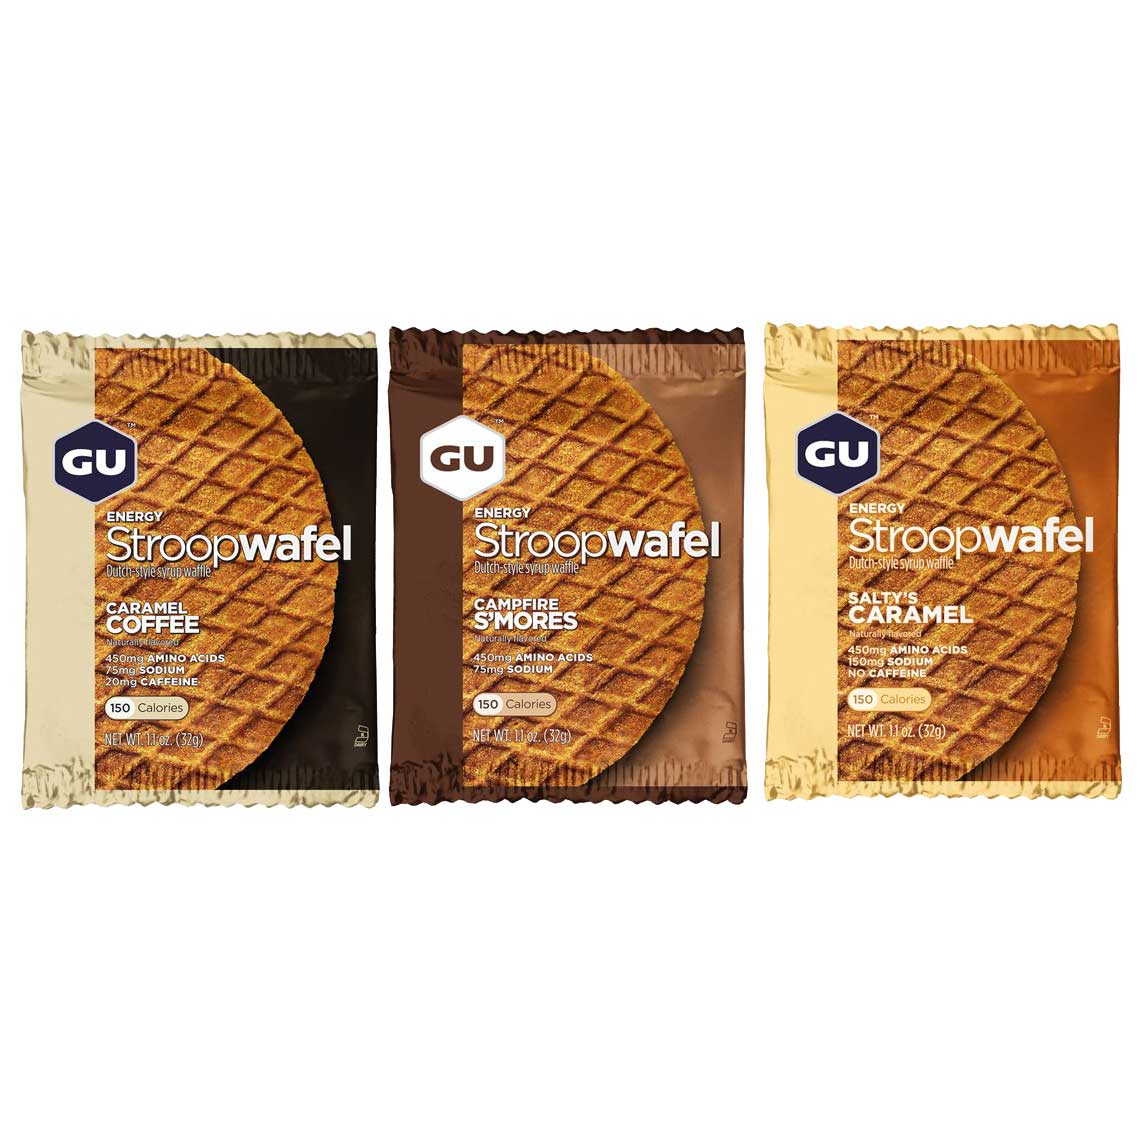 Productfoto van GU Stroopwafel met Koolhydraten - 32g